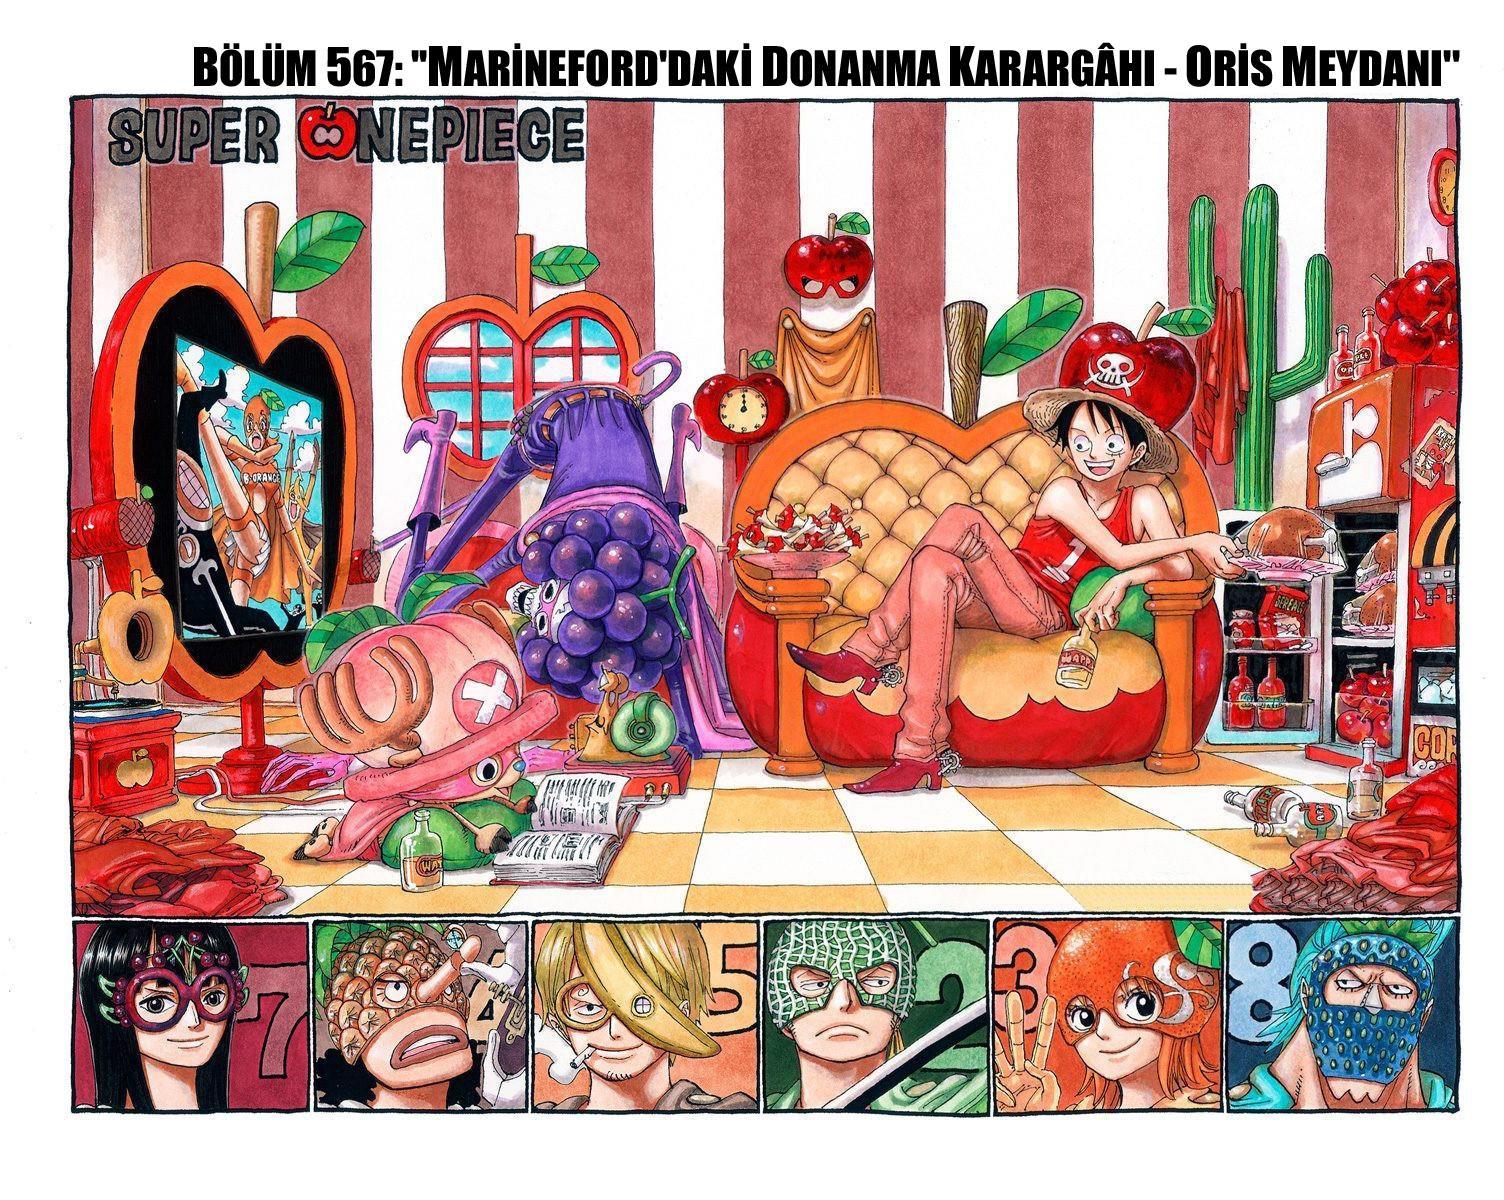 One Piece [Renkli] mangasının 0567 bölümünün 2. sayfasını okuyorsunuz.